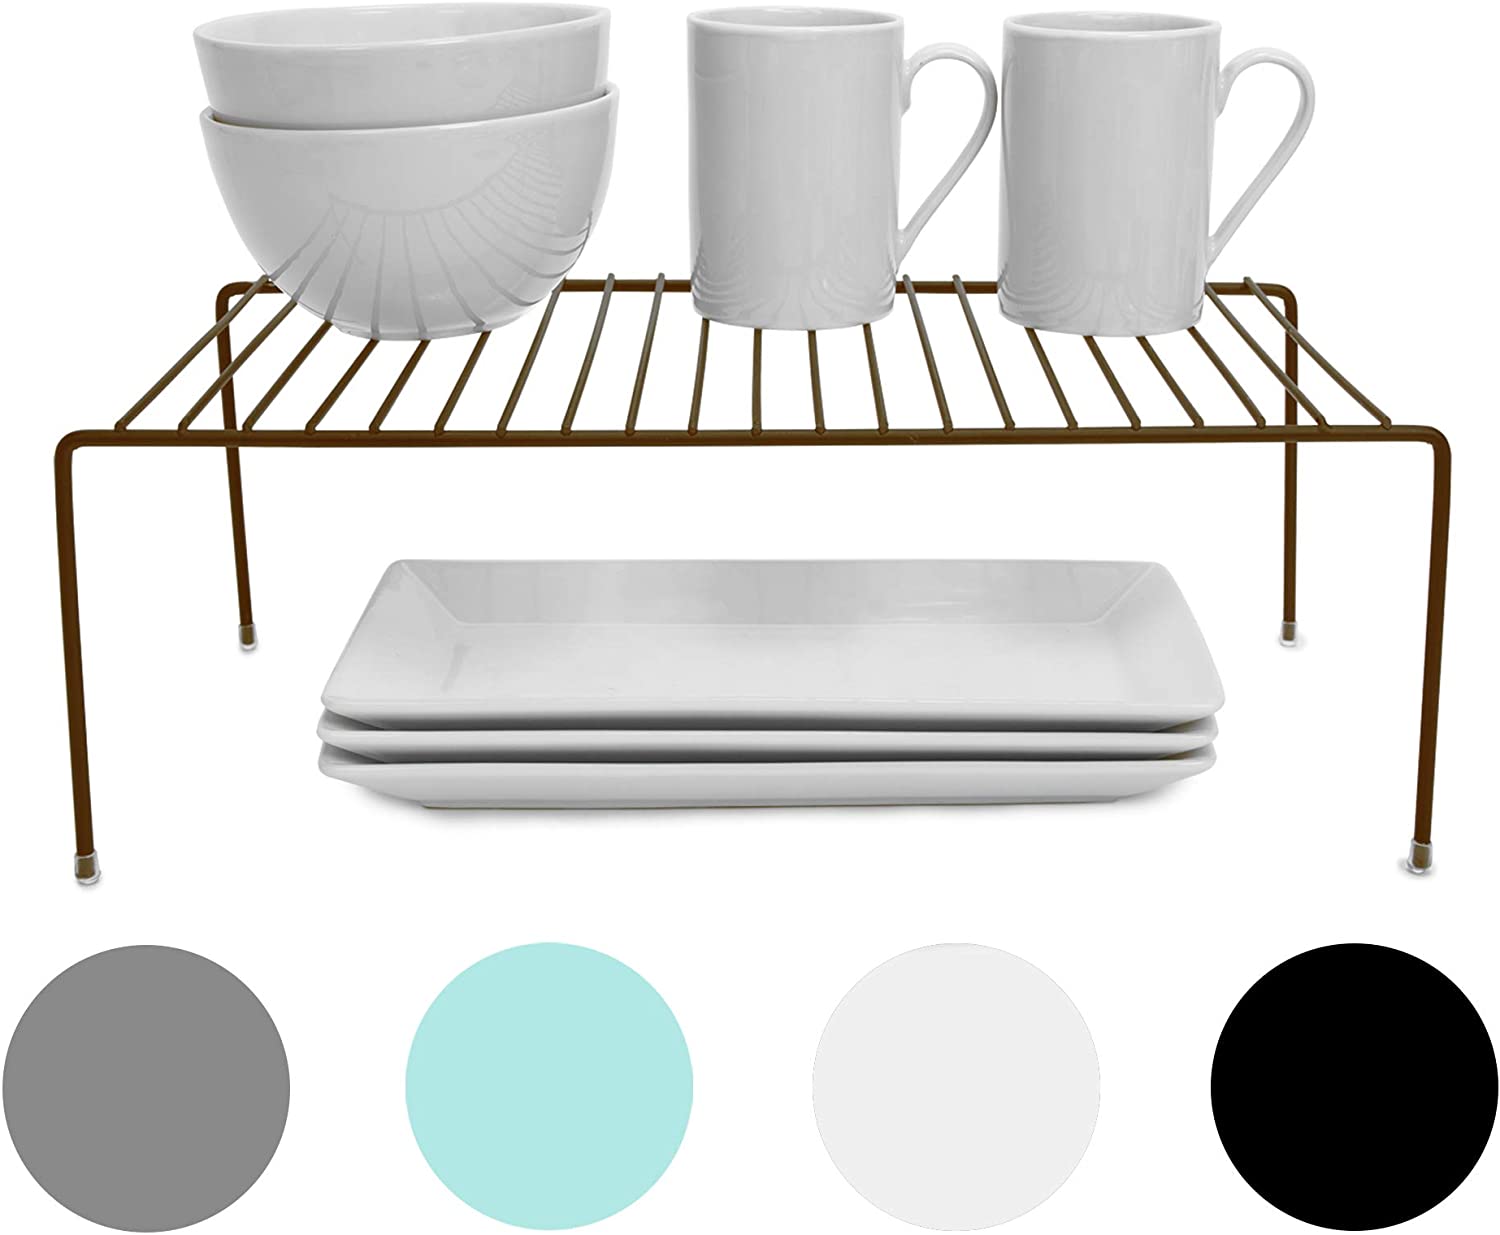 Smart Design Shelf Organizer, Set of 4